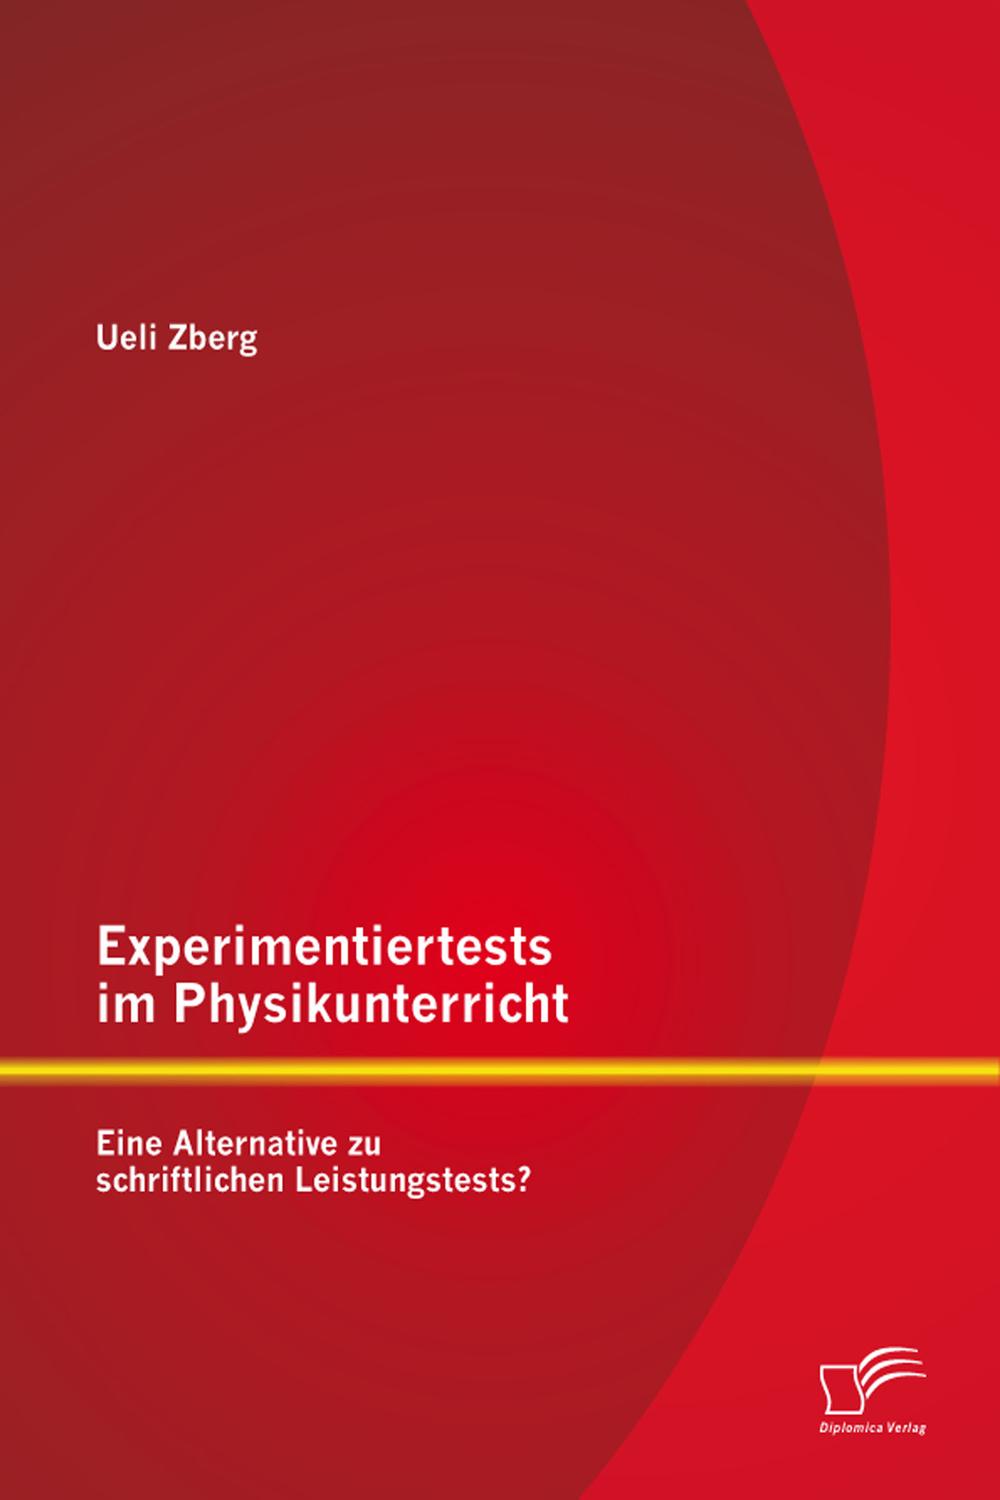 Experimentiertests im Physikunterricht: Eine Alternative zu schriftlichen Leistungstests? - Ueli Zberg